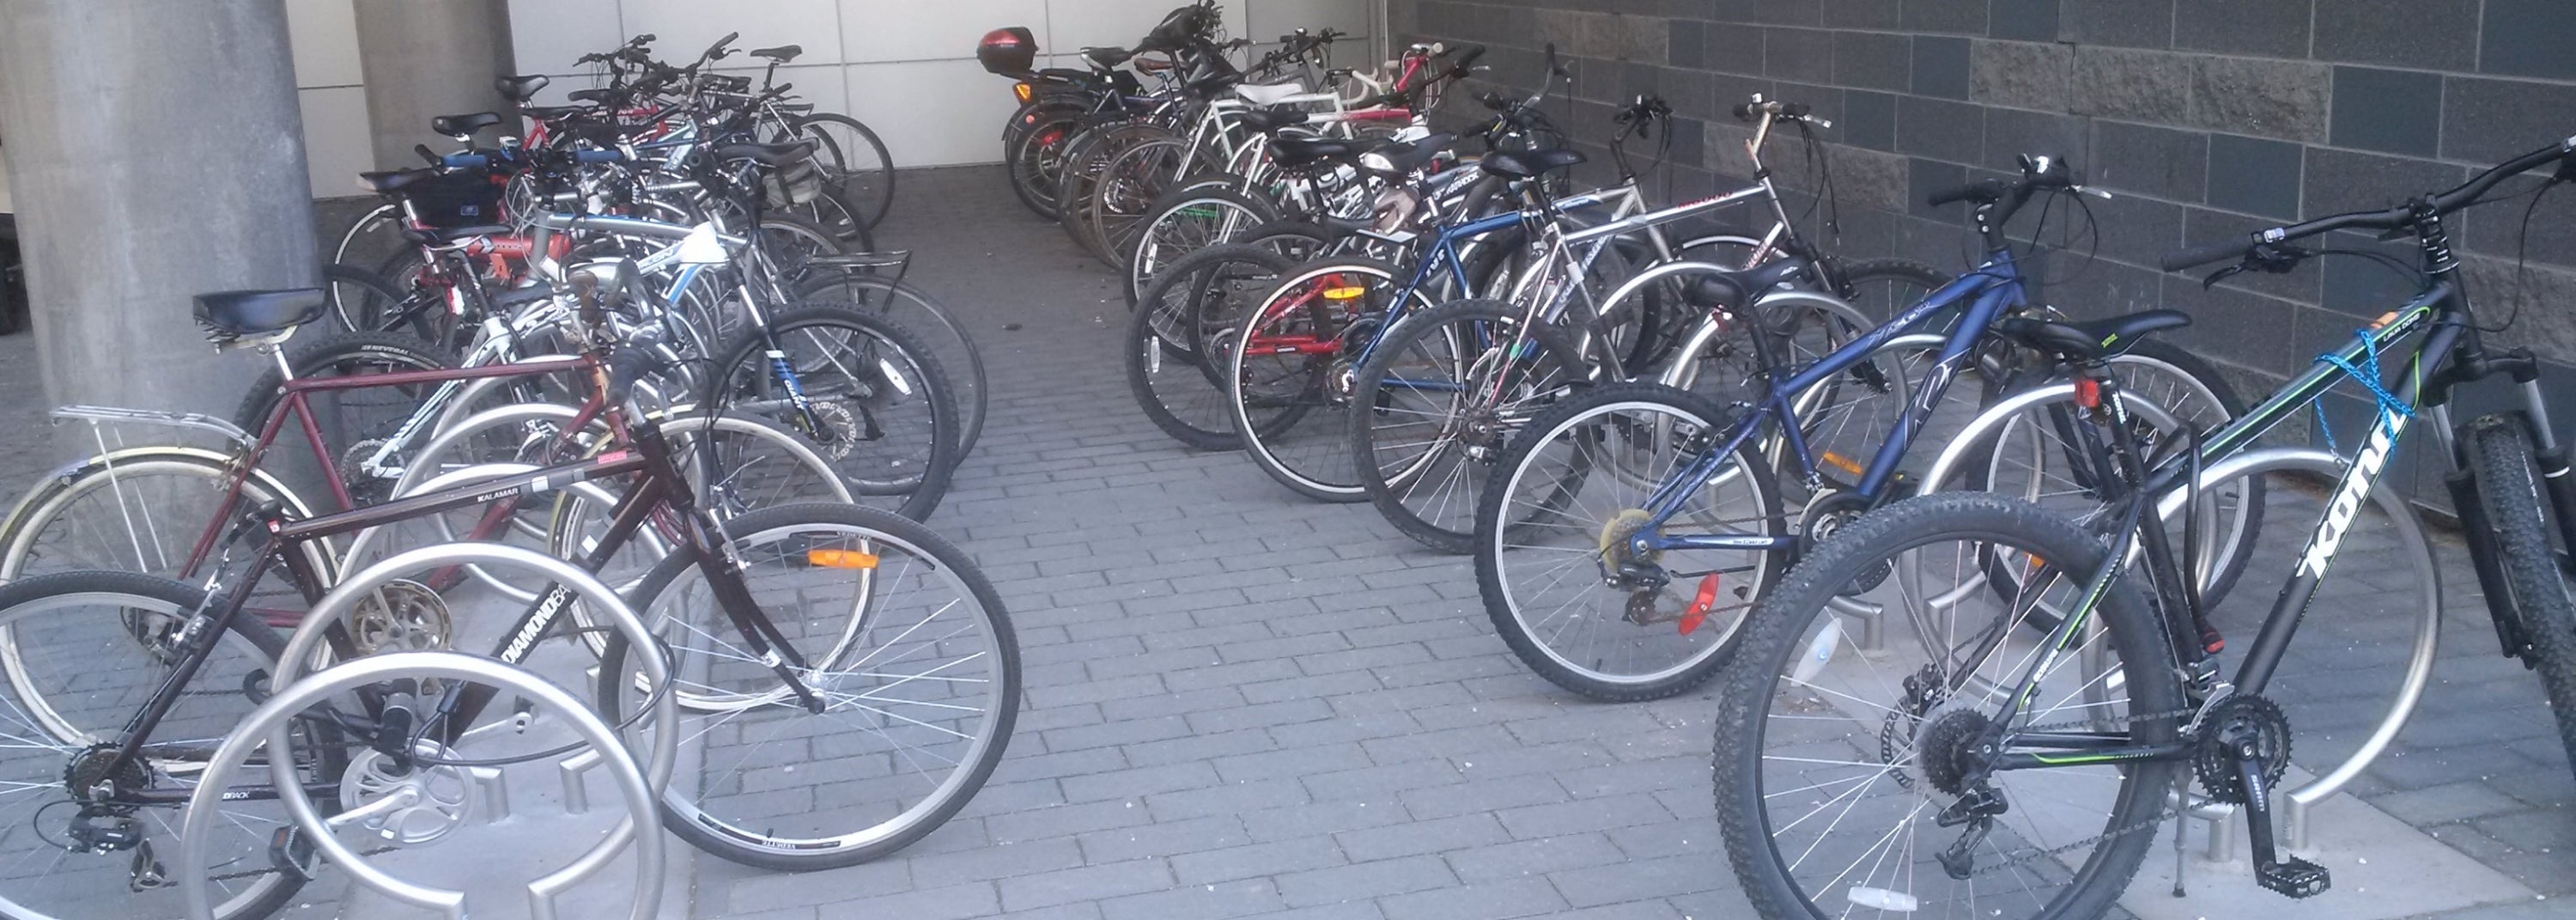 Bikes stored on bike racks